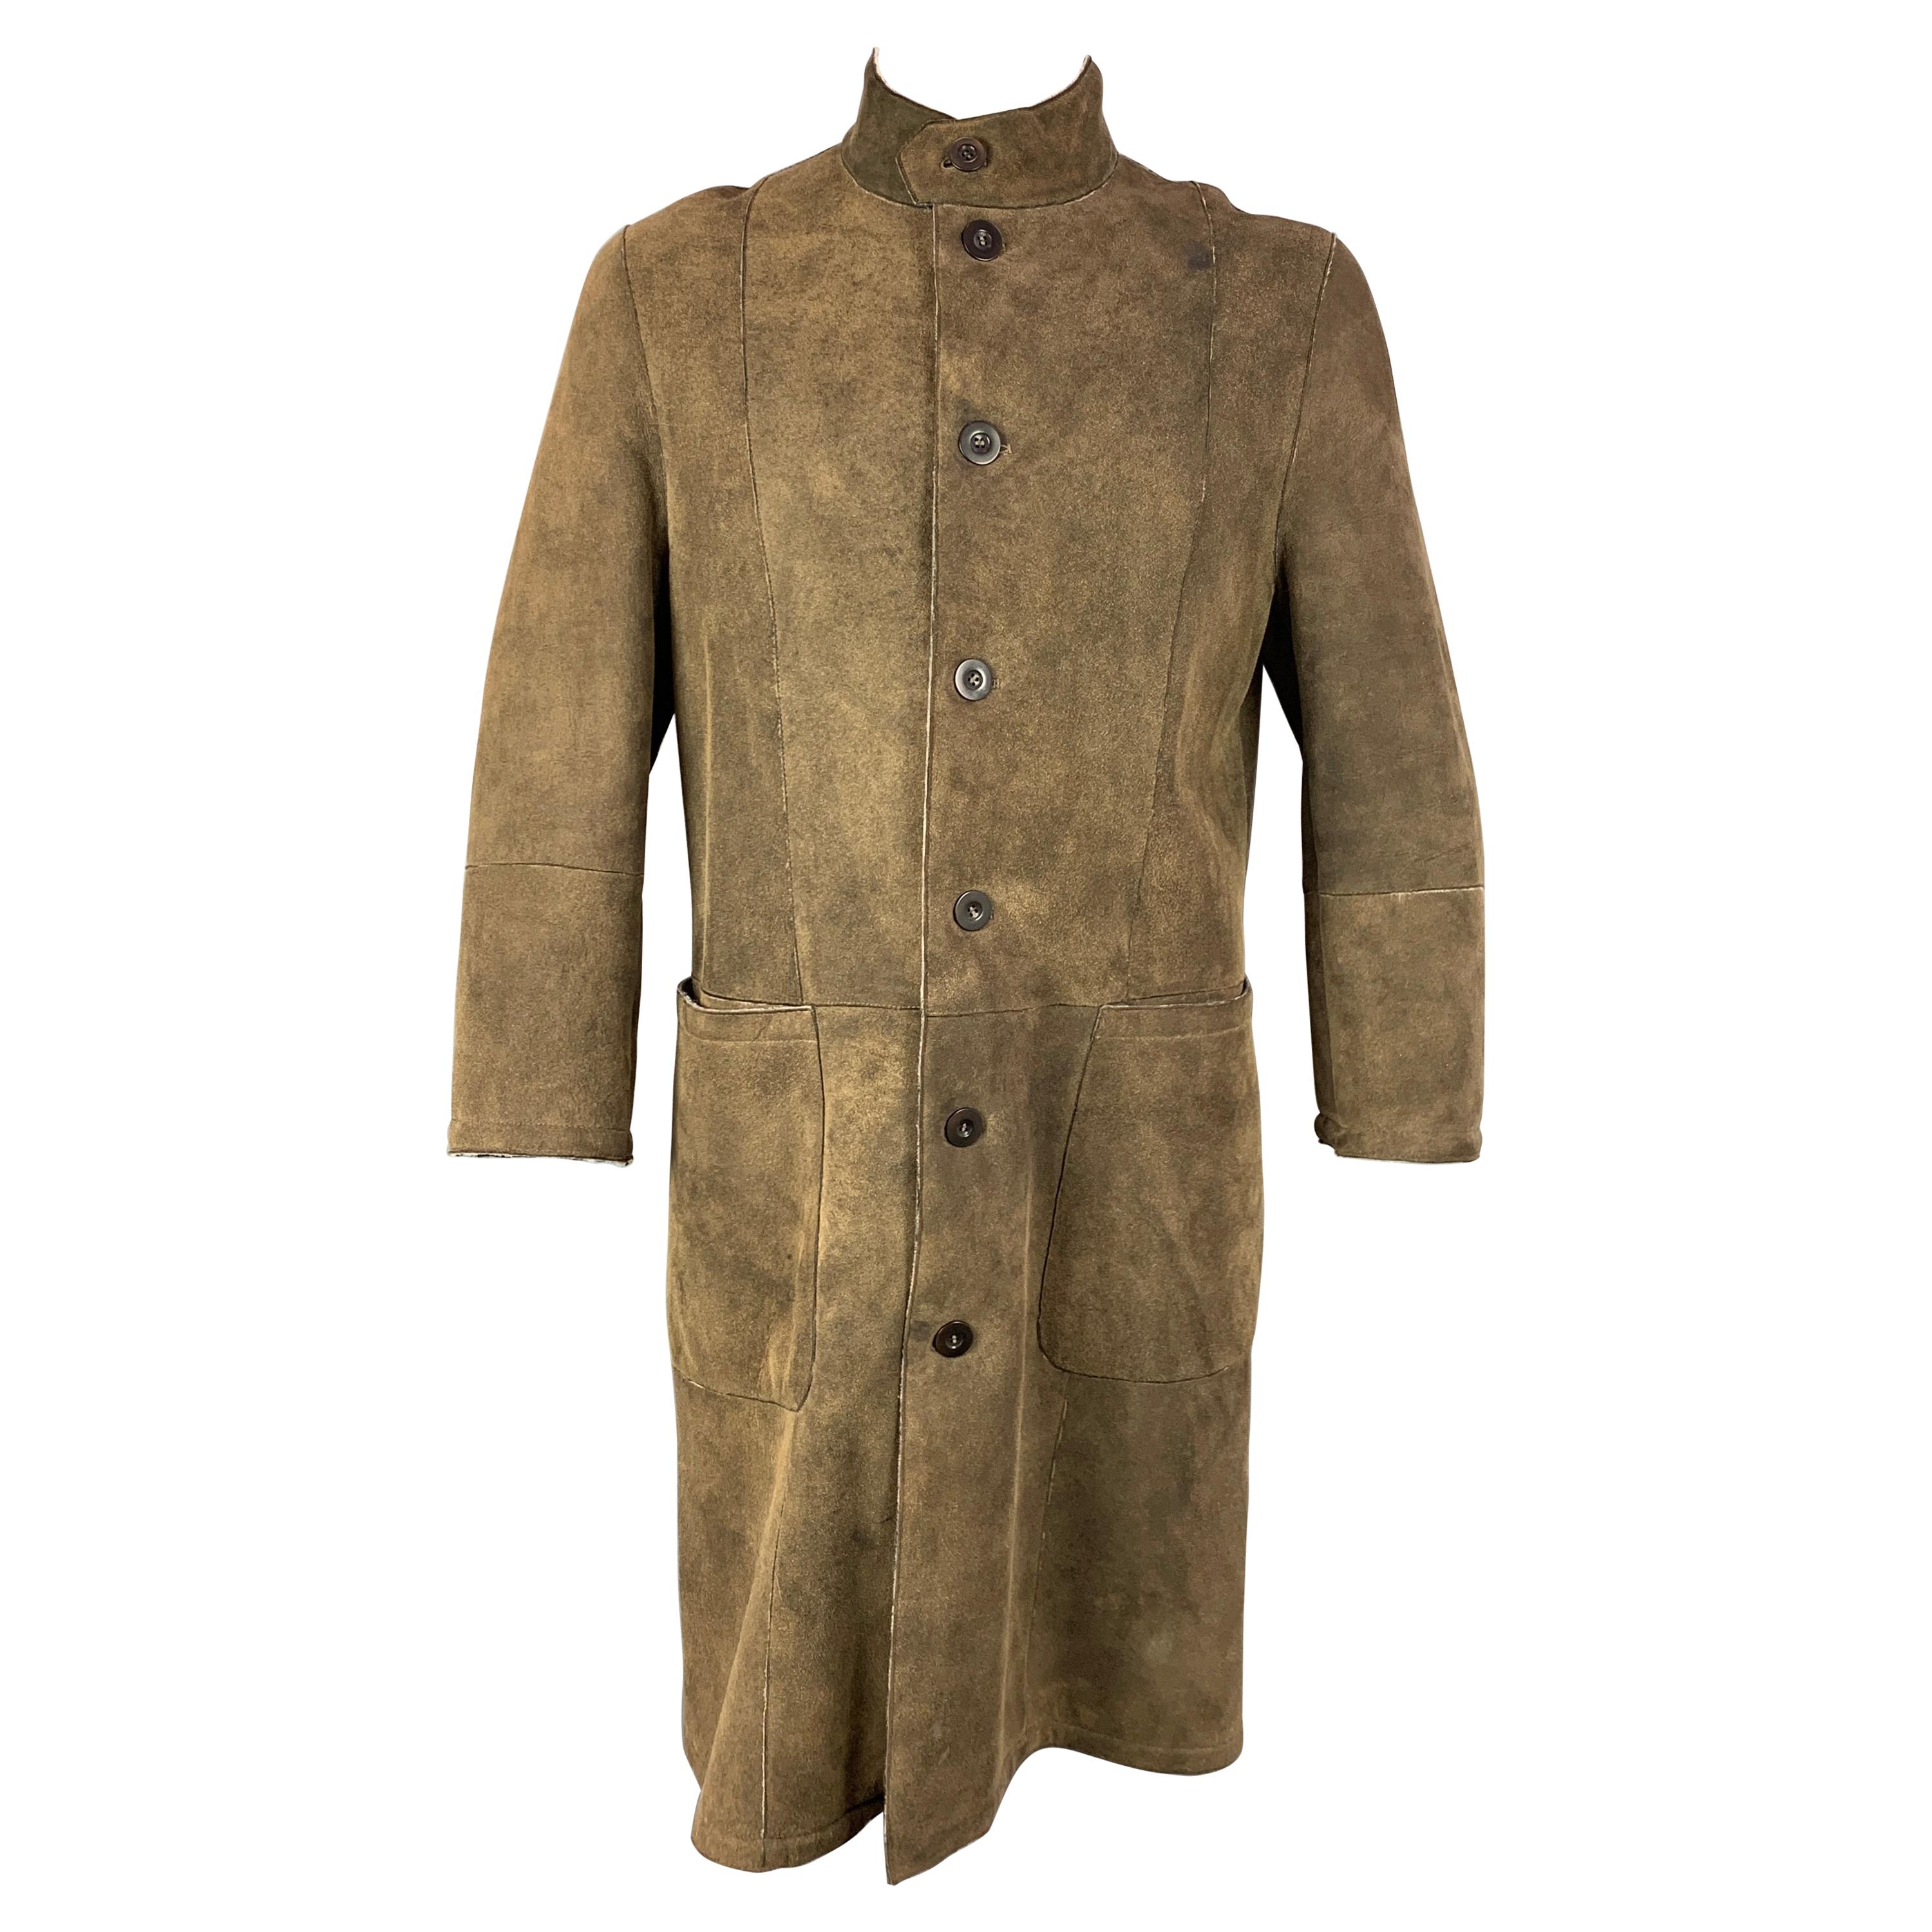 ARMANI COLLEZIONI Size 42 Olive Distressed Shearling Buttoned Coat